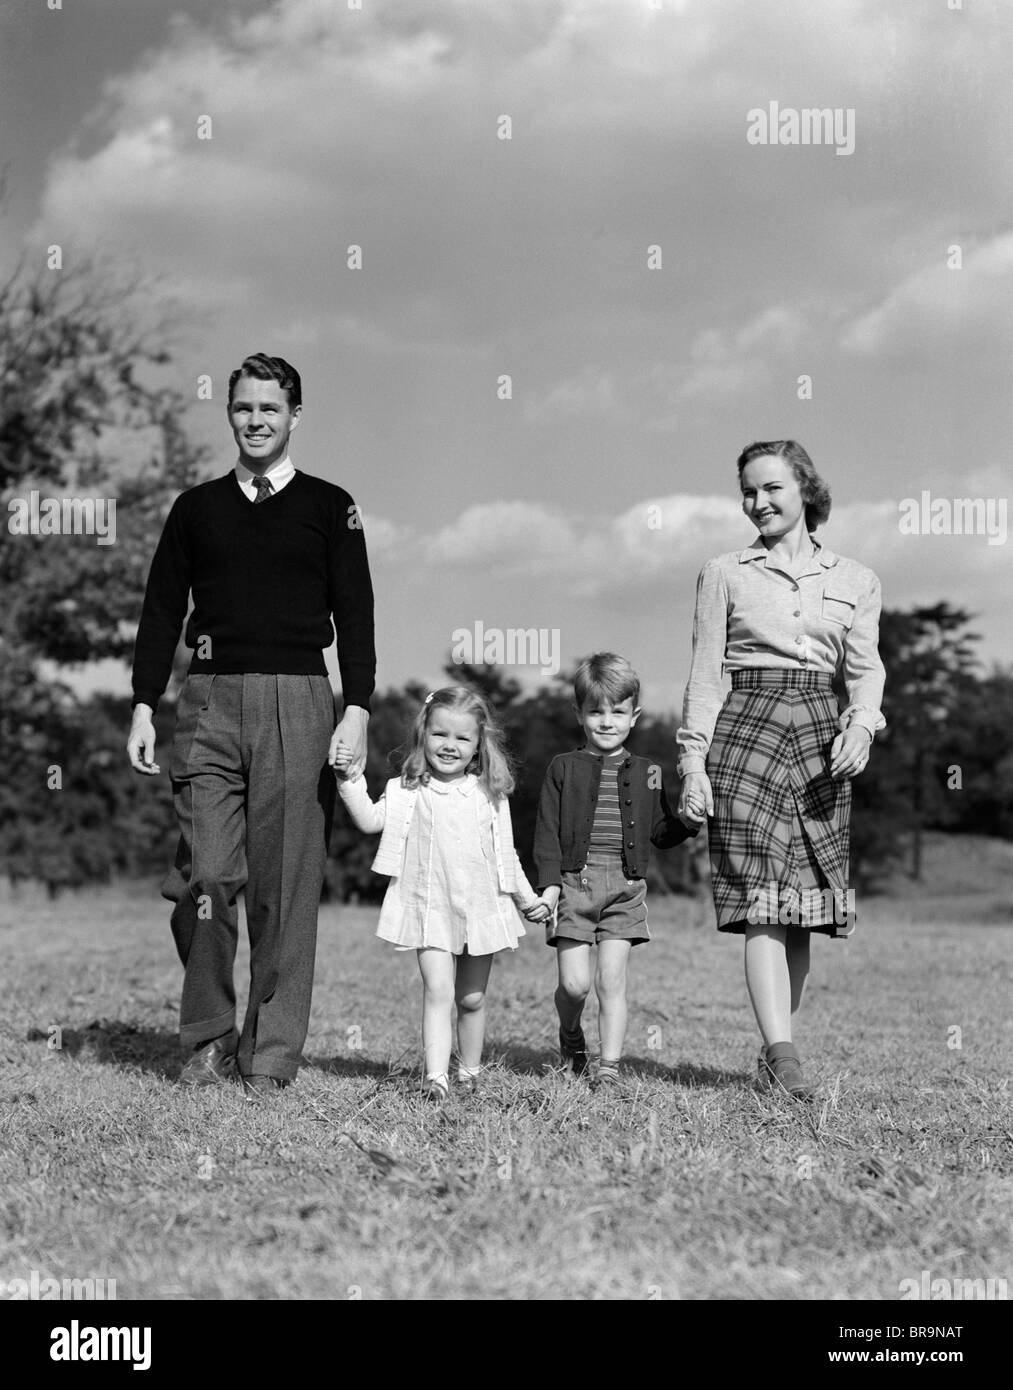 1940 Familia tomados de la mano caminando sobre hierba Foto de stock